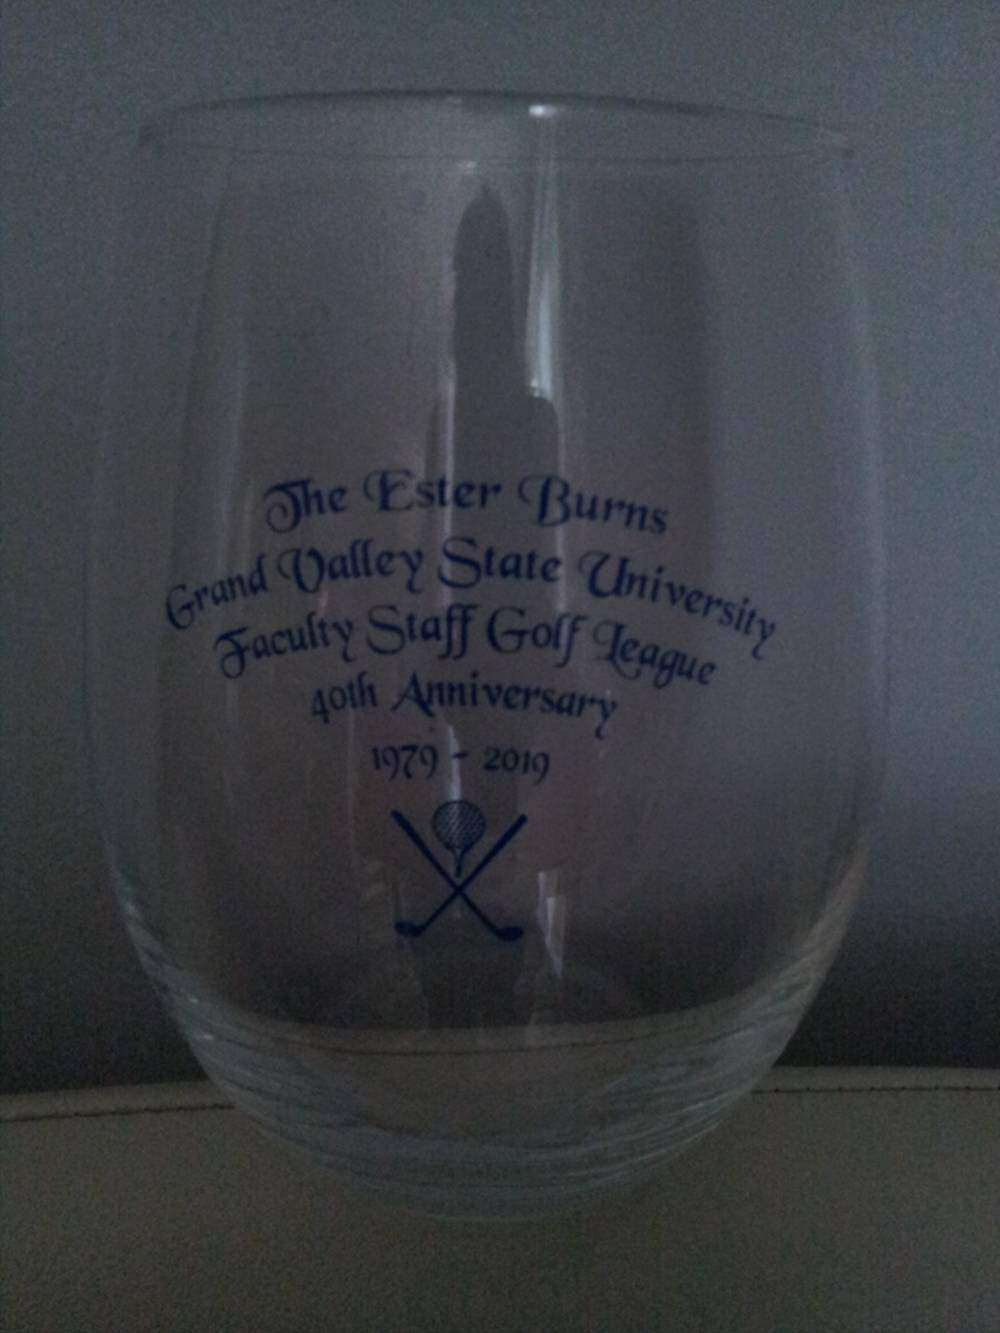 40th Anniversary Commemorative Wine Glass